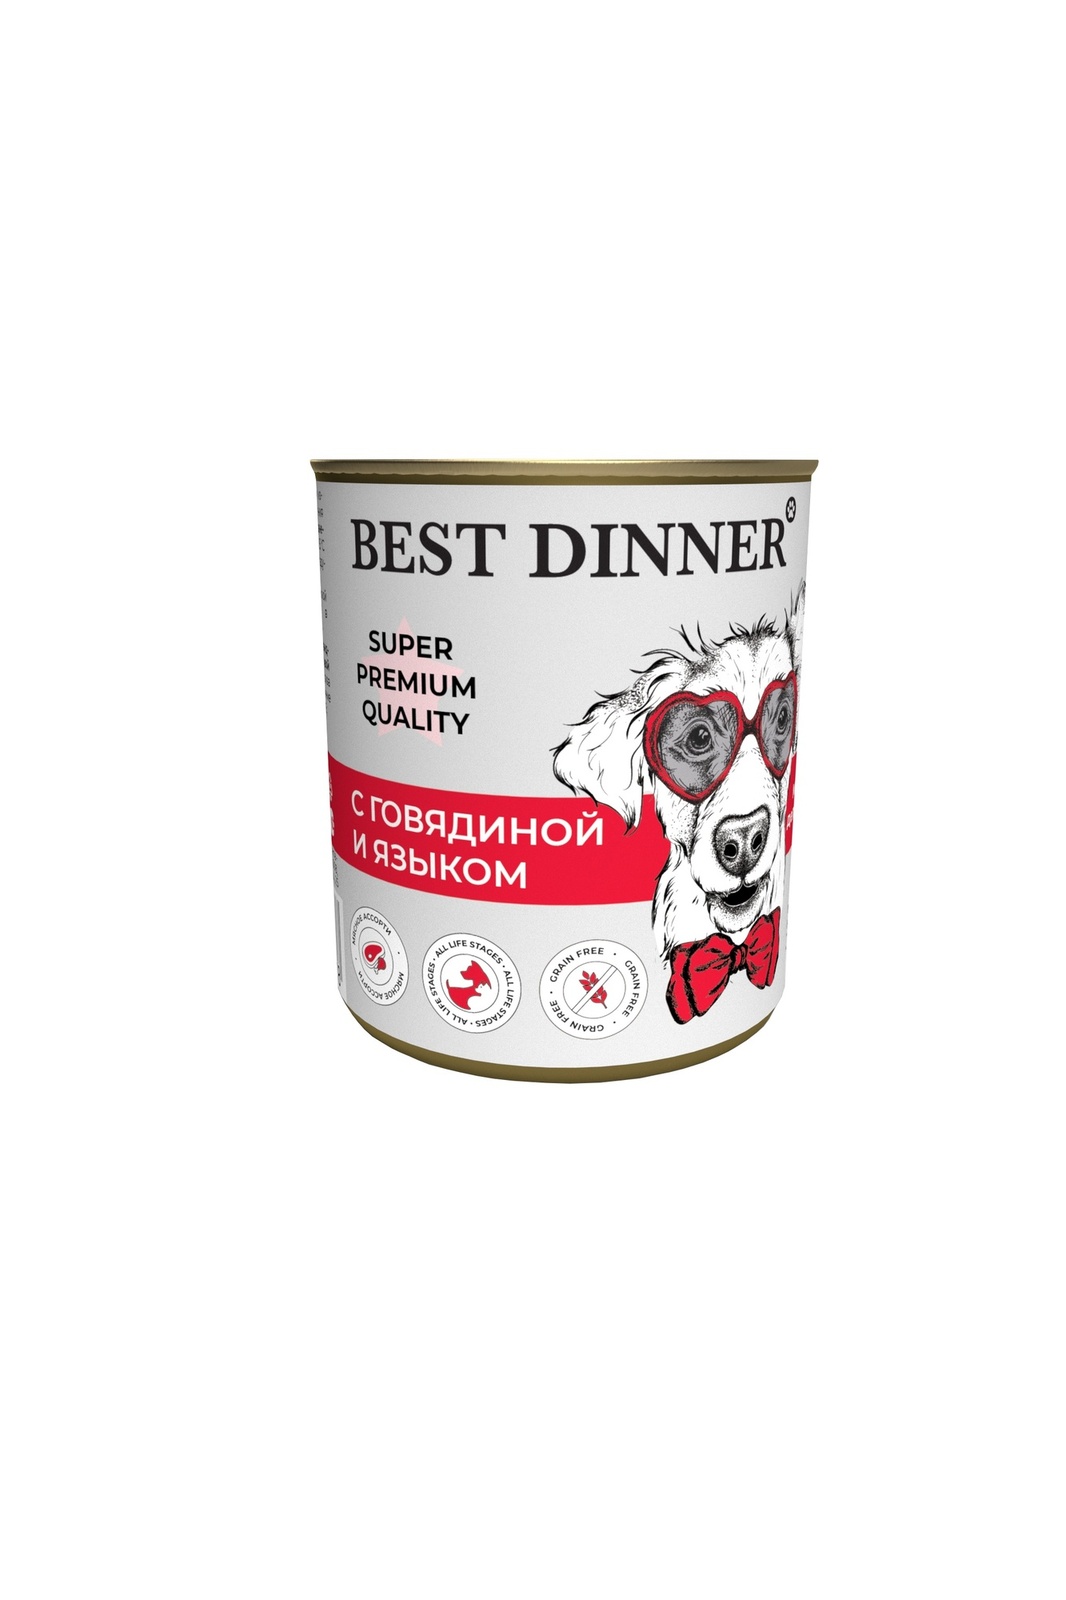 Best Dinner Best Dinner консервы для собак Super Premium С говядиной и языком (340 г) best dinner best dinner консервы premium меню 5 с ягненком и рисом 340 г